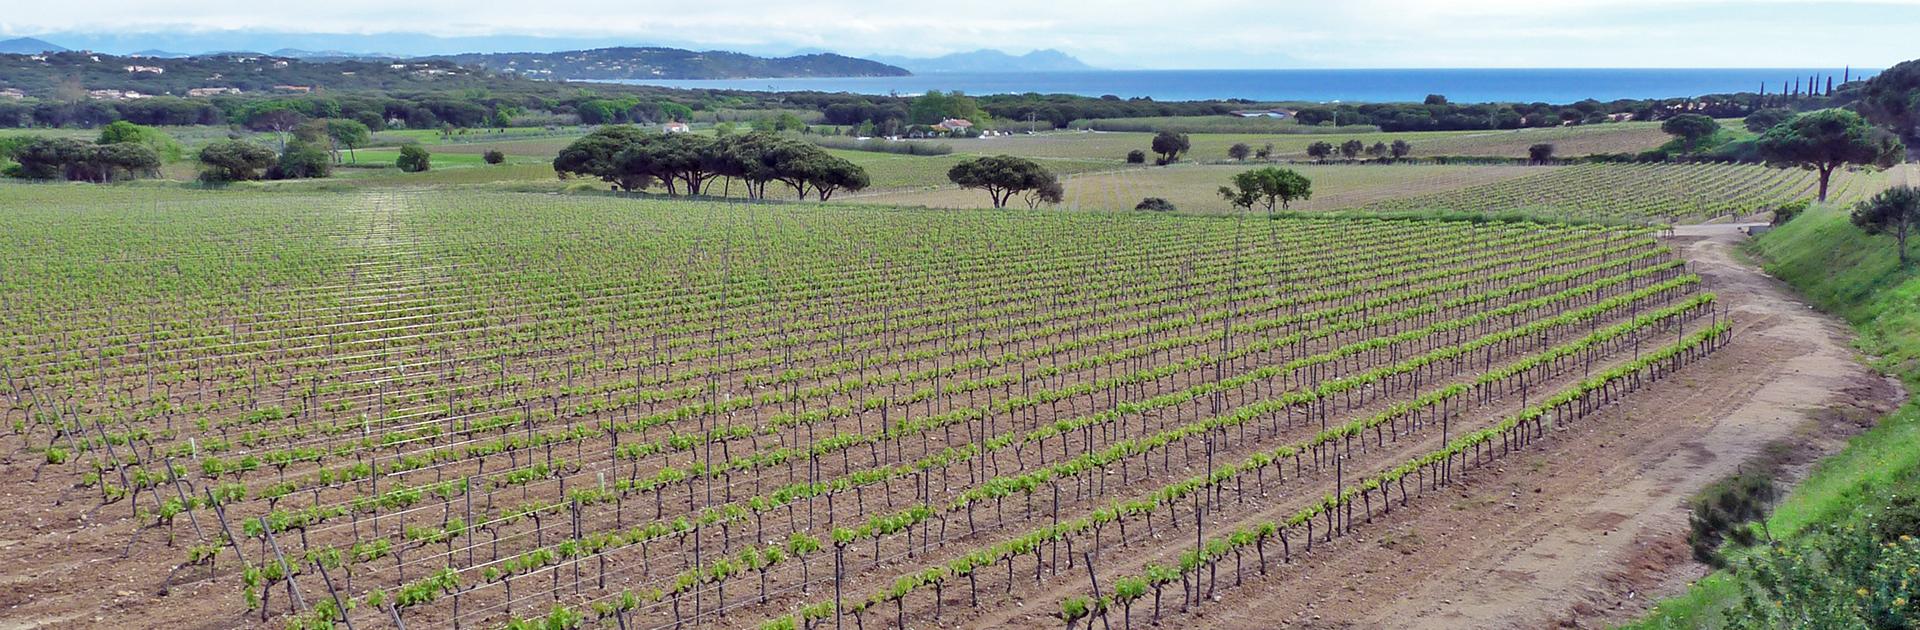 Vignes près de Ramatuelle dans le massif des Maures, terroir argilo-siliceux en Provence cristalline.